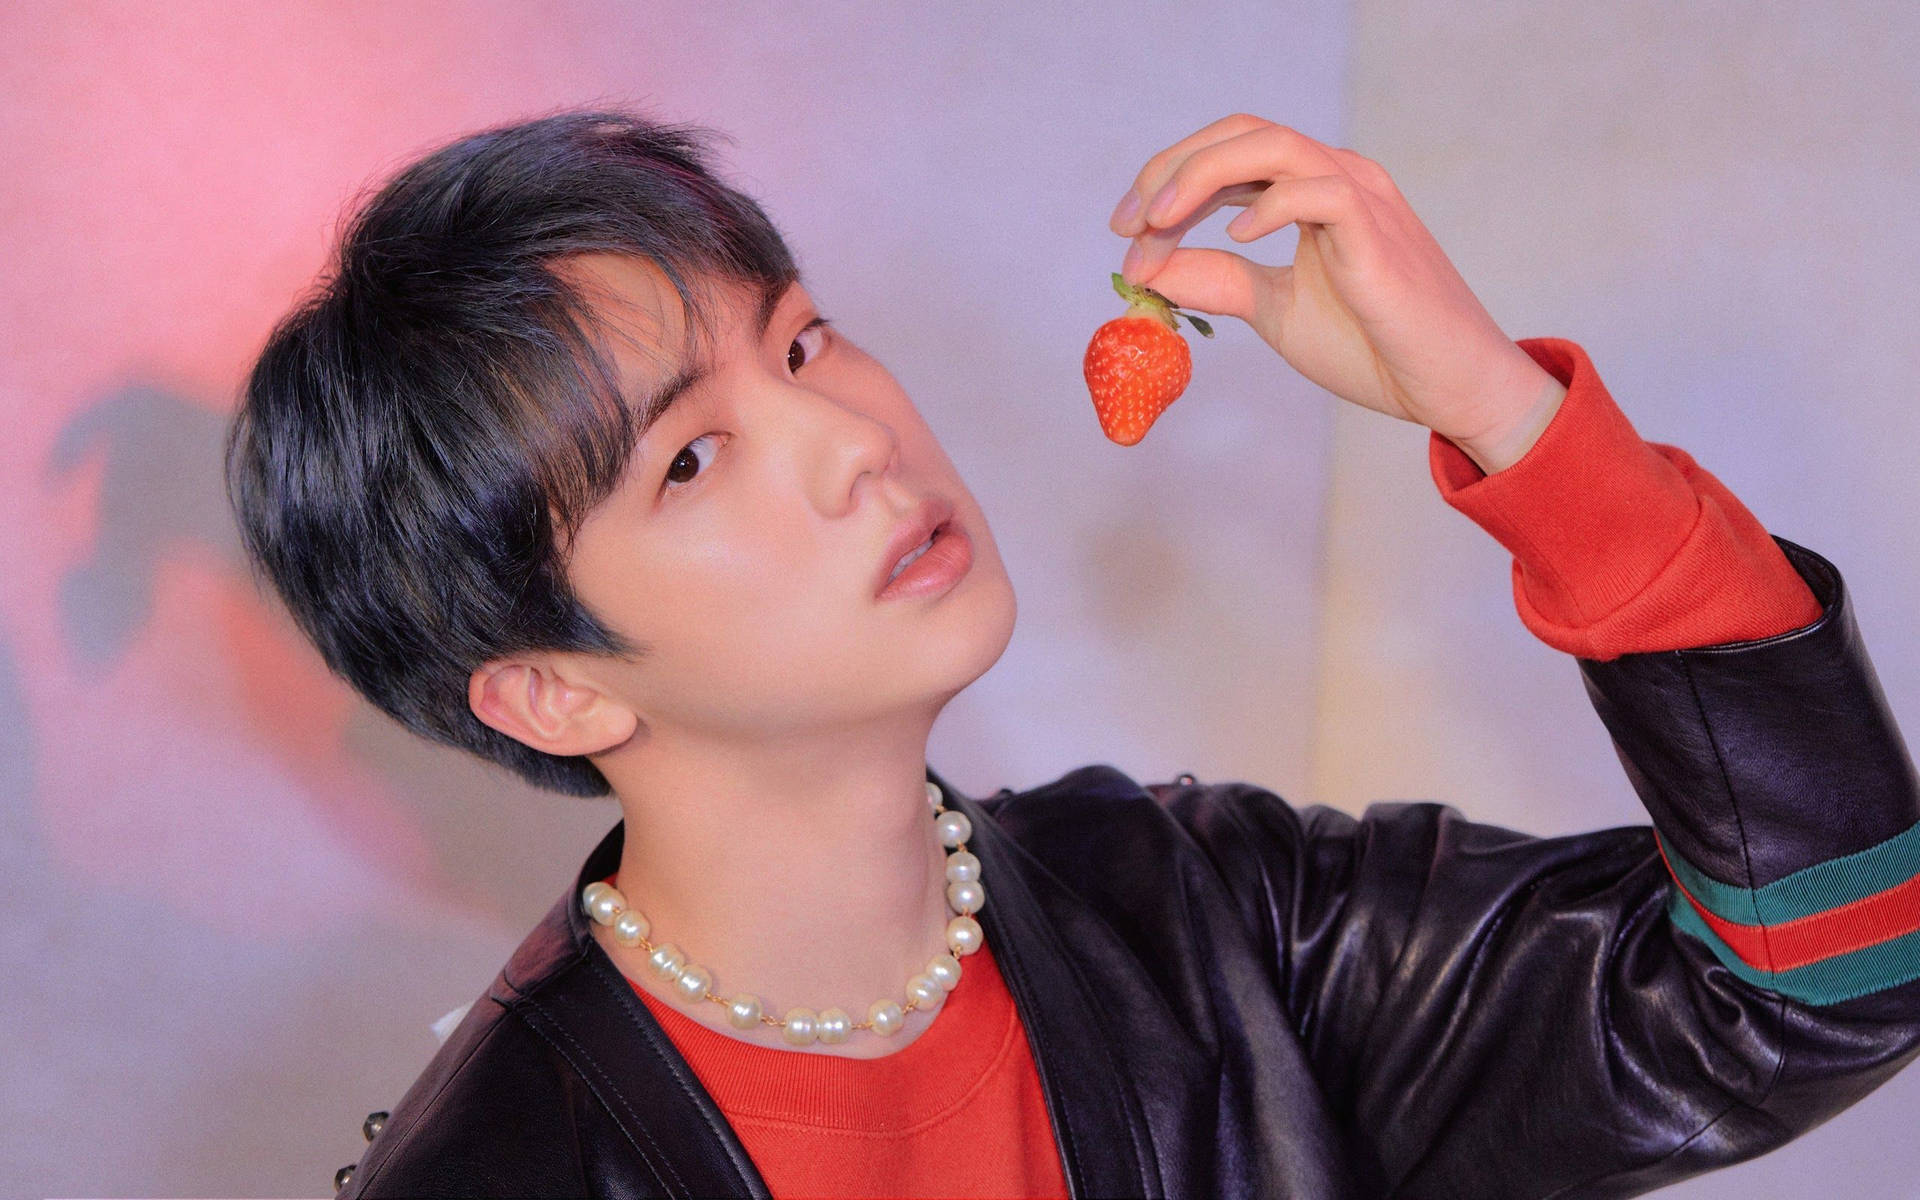 Kim Seok Jin With Strawberry Background